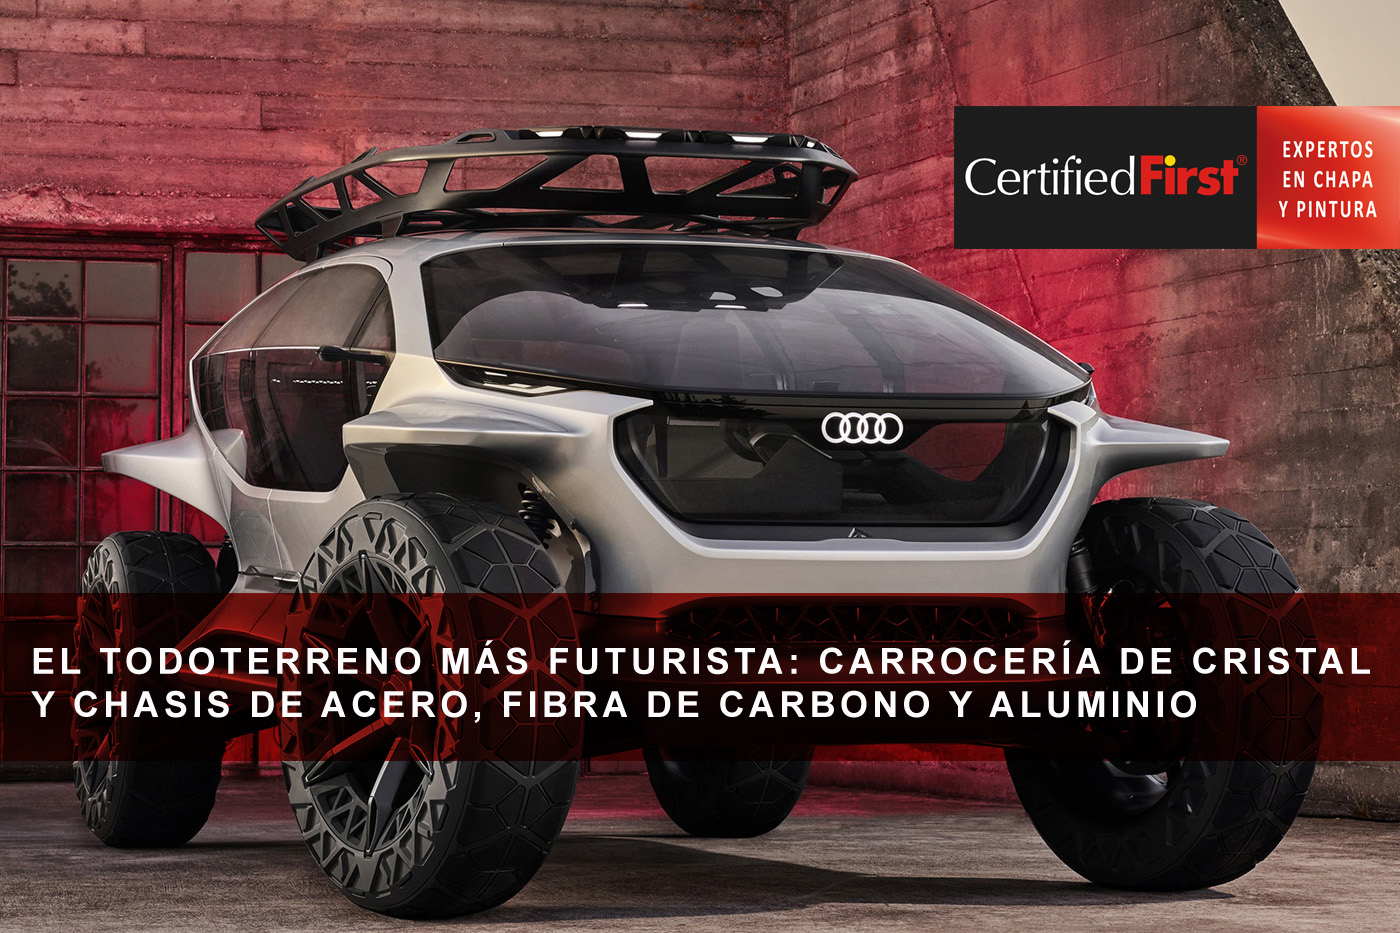 El todoterreno más futurista: carrocería de cristal y chasis de acero, fibra de carbono y aluminio